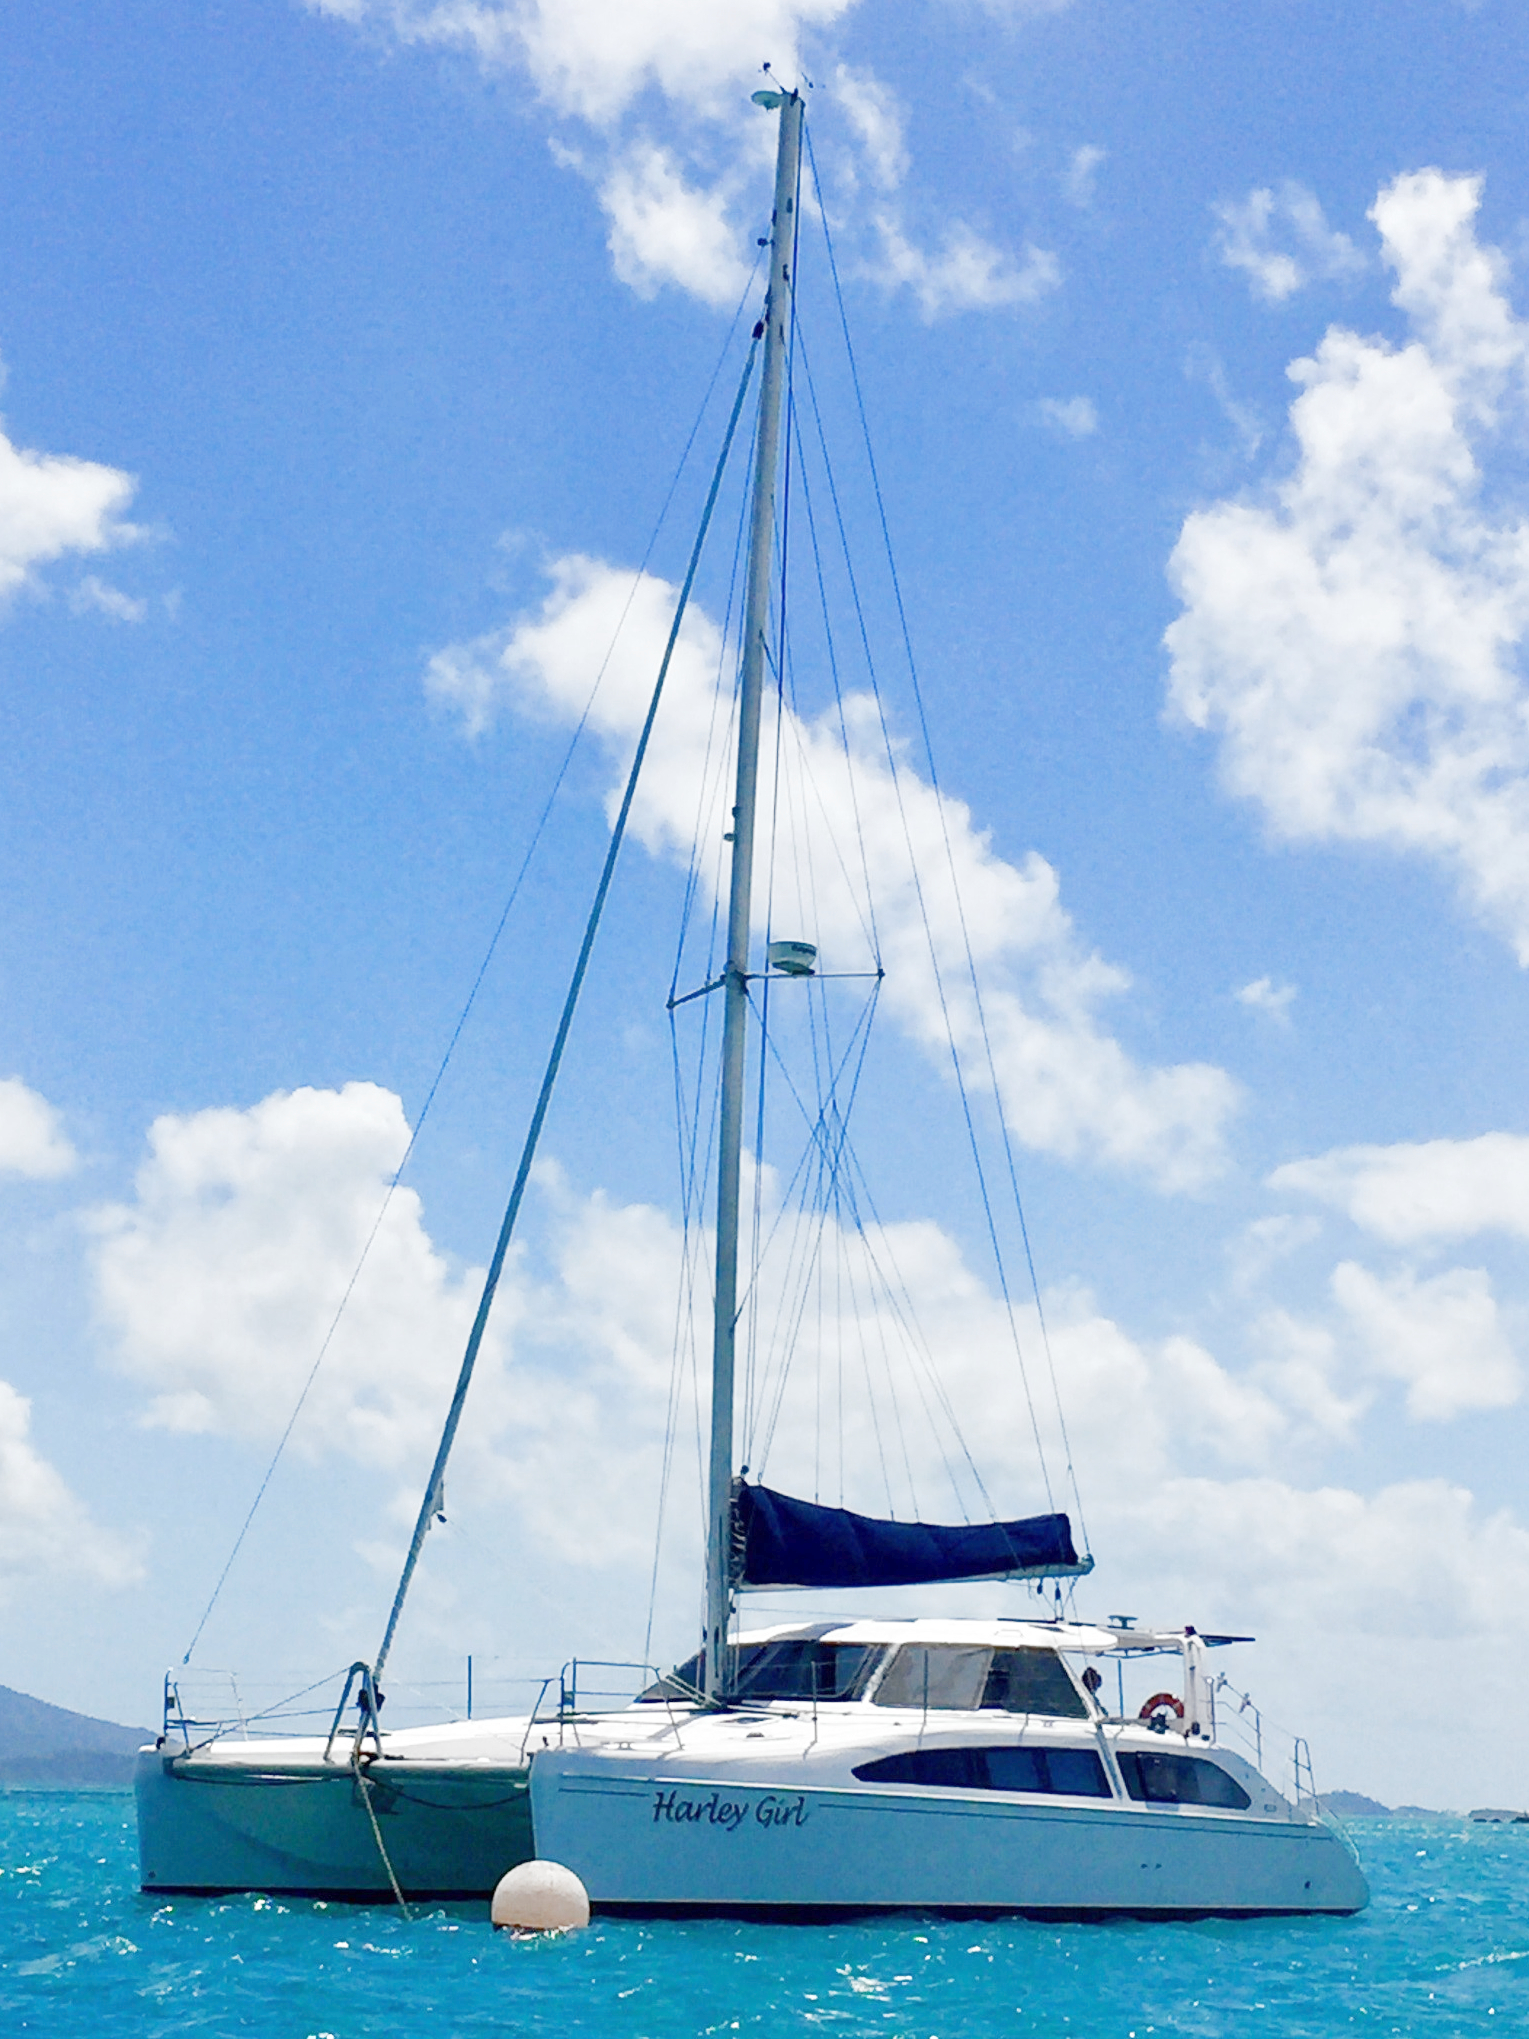 'Harley Girl' Seawind 1250 Sailing Catamaran at anchor